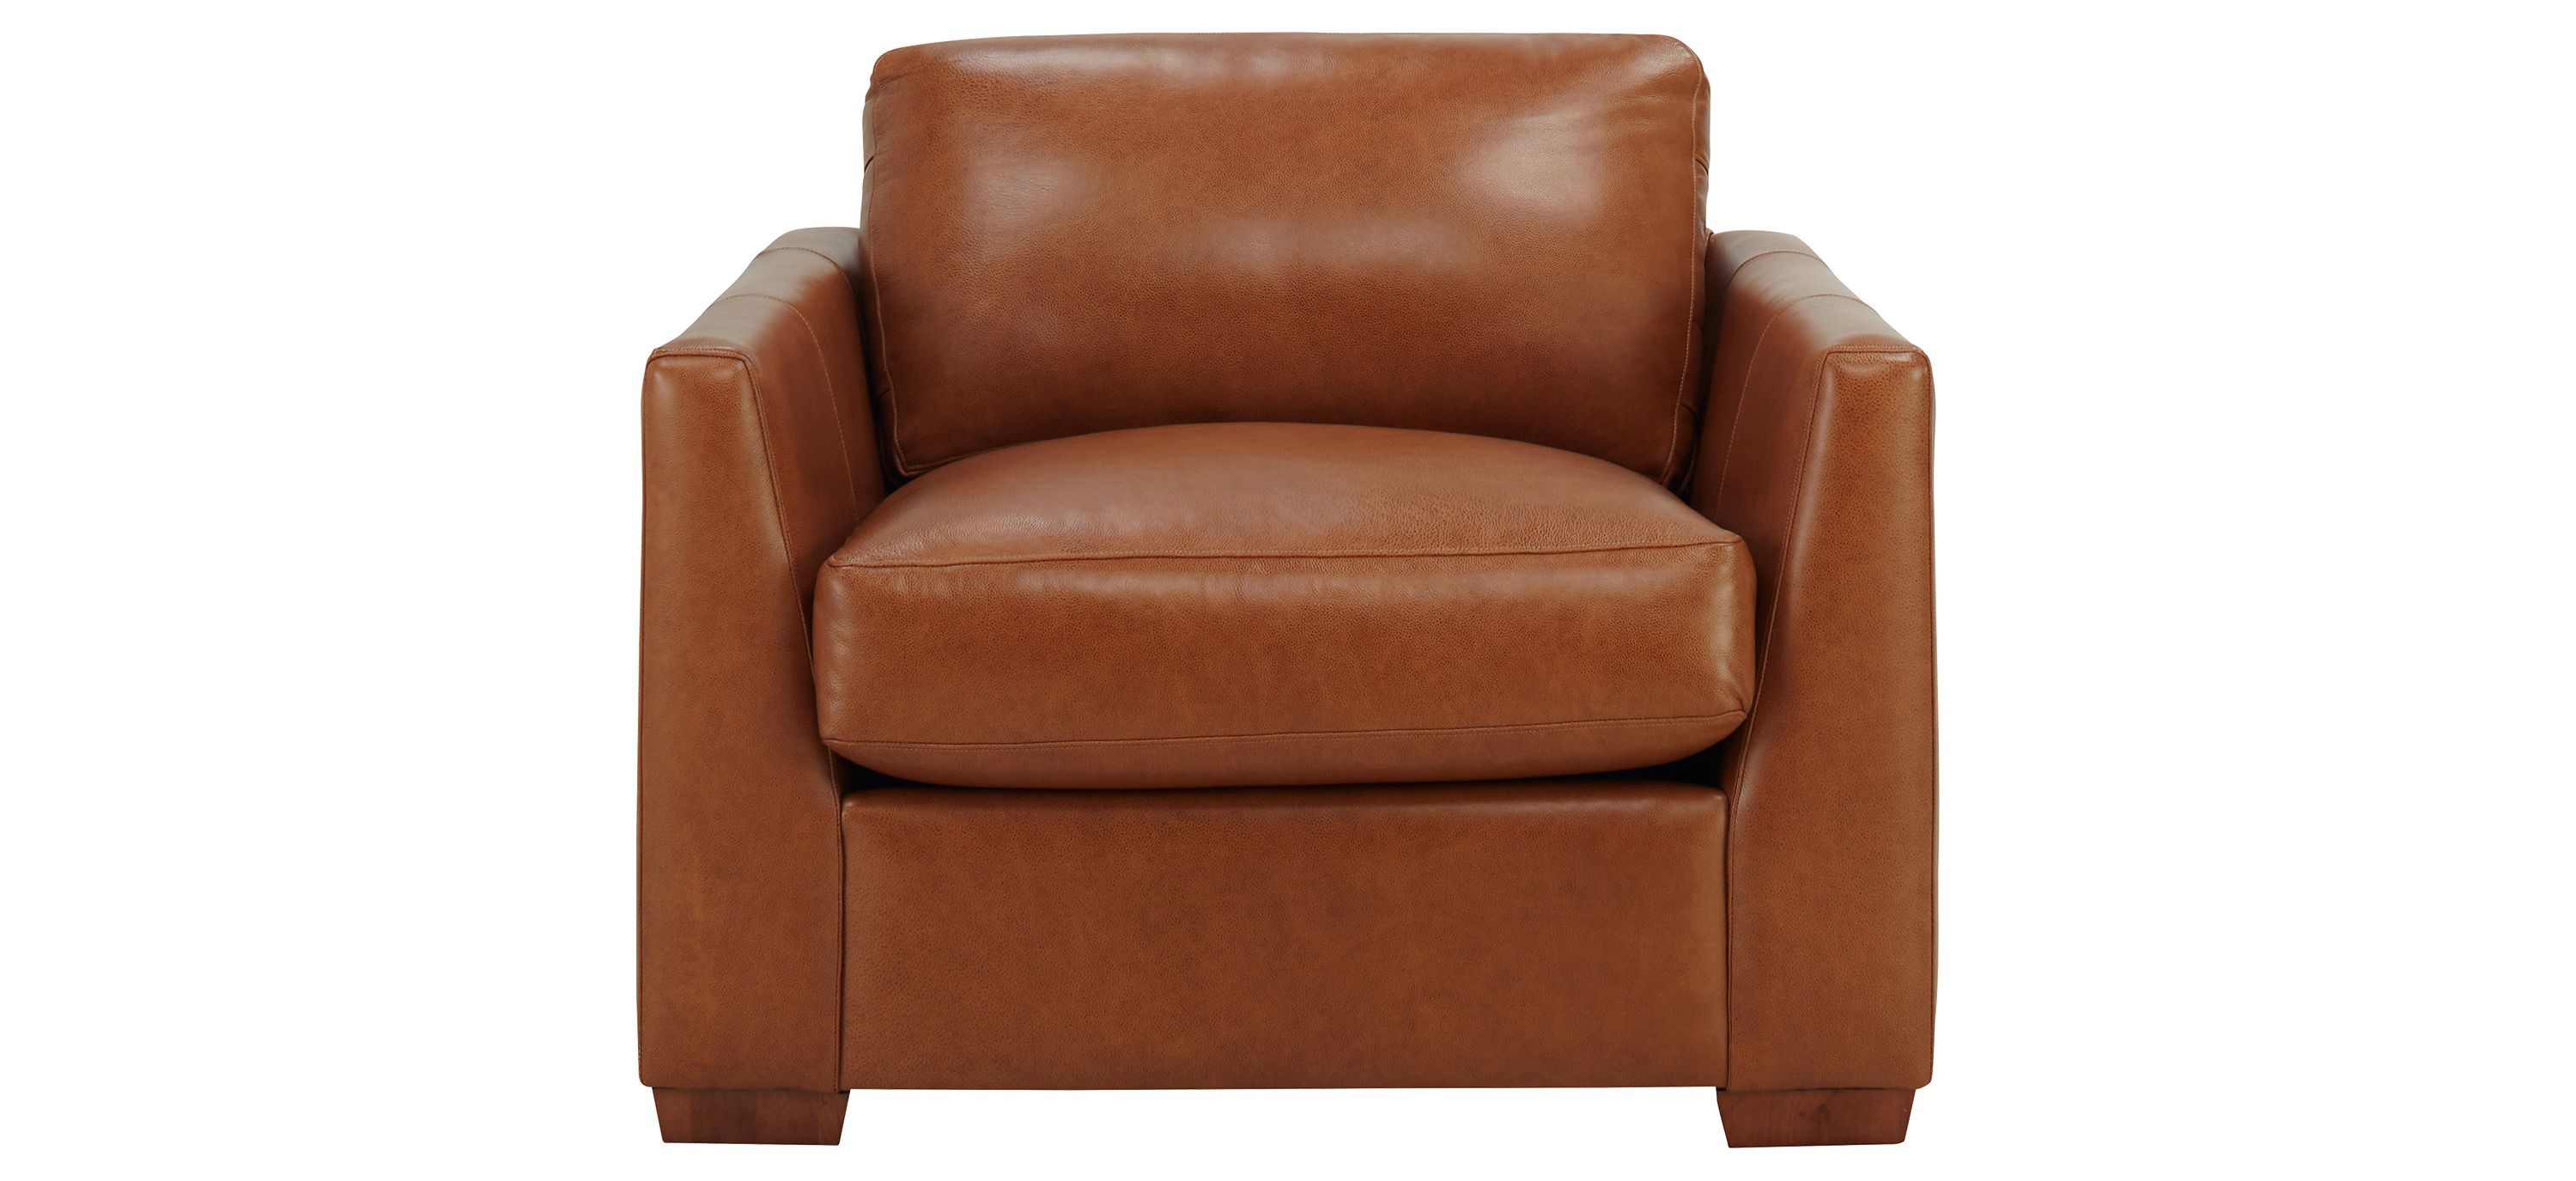 Toscanna Leather Chair